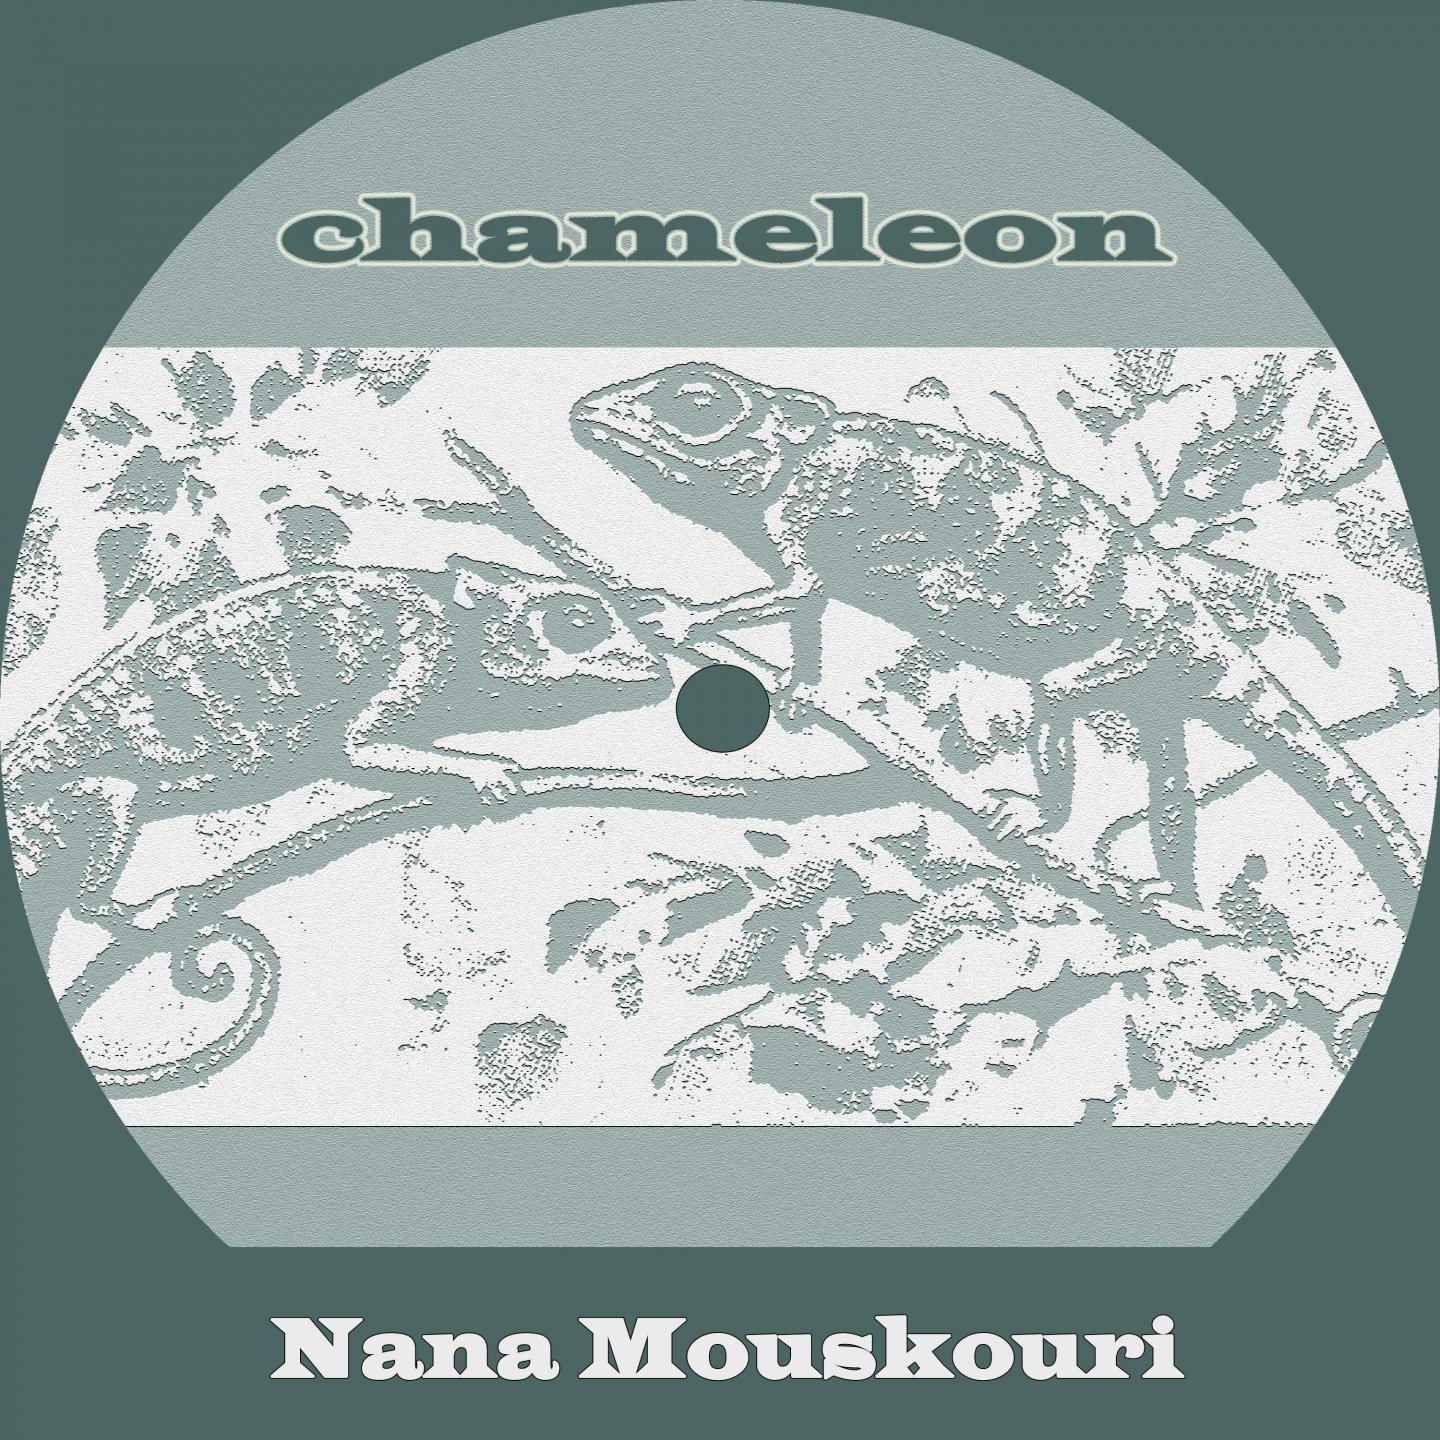 Chameleon专辑